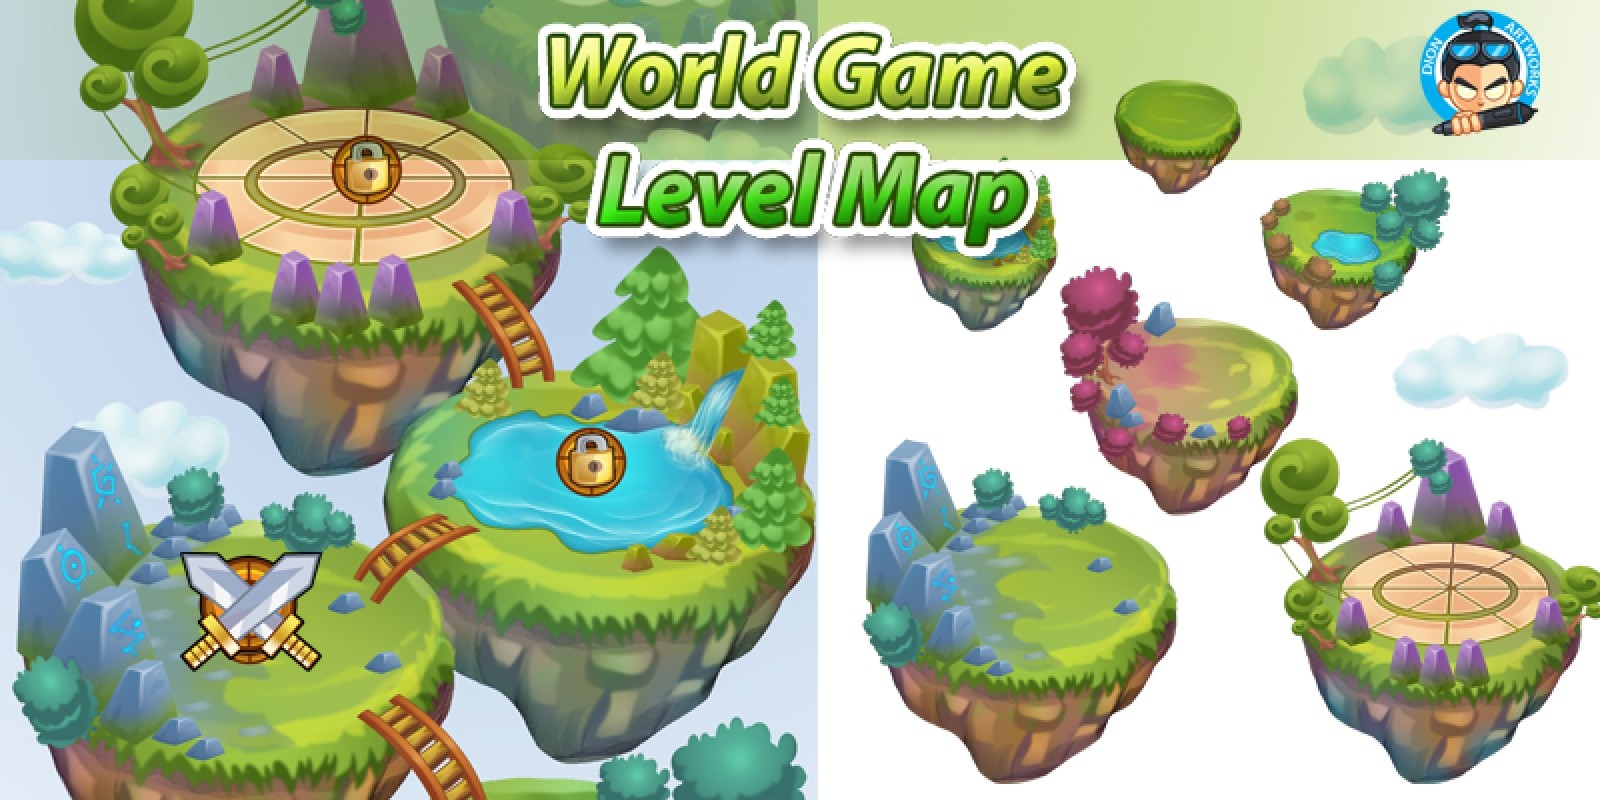 Уровень игры 124. Game Level Map. Левел в игре. Зеленый мир игра. Уровни в игре.